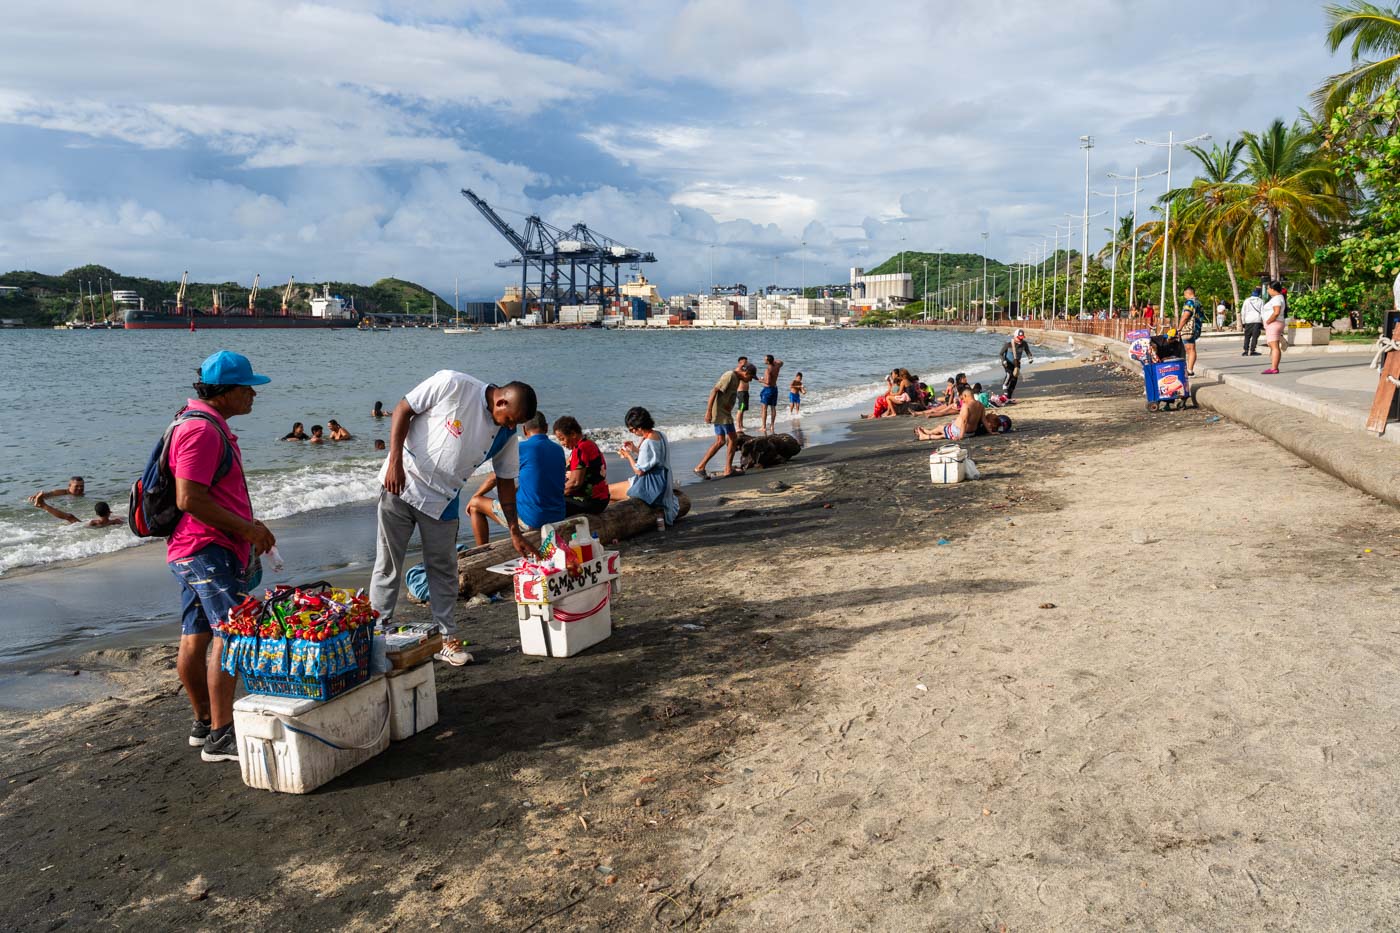 Vendors check their wares on Santa Marta Beach while tourists enjoy their day..